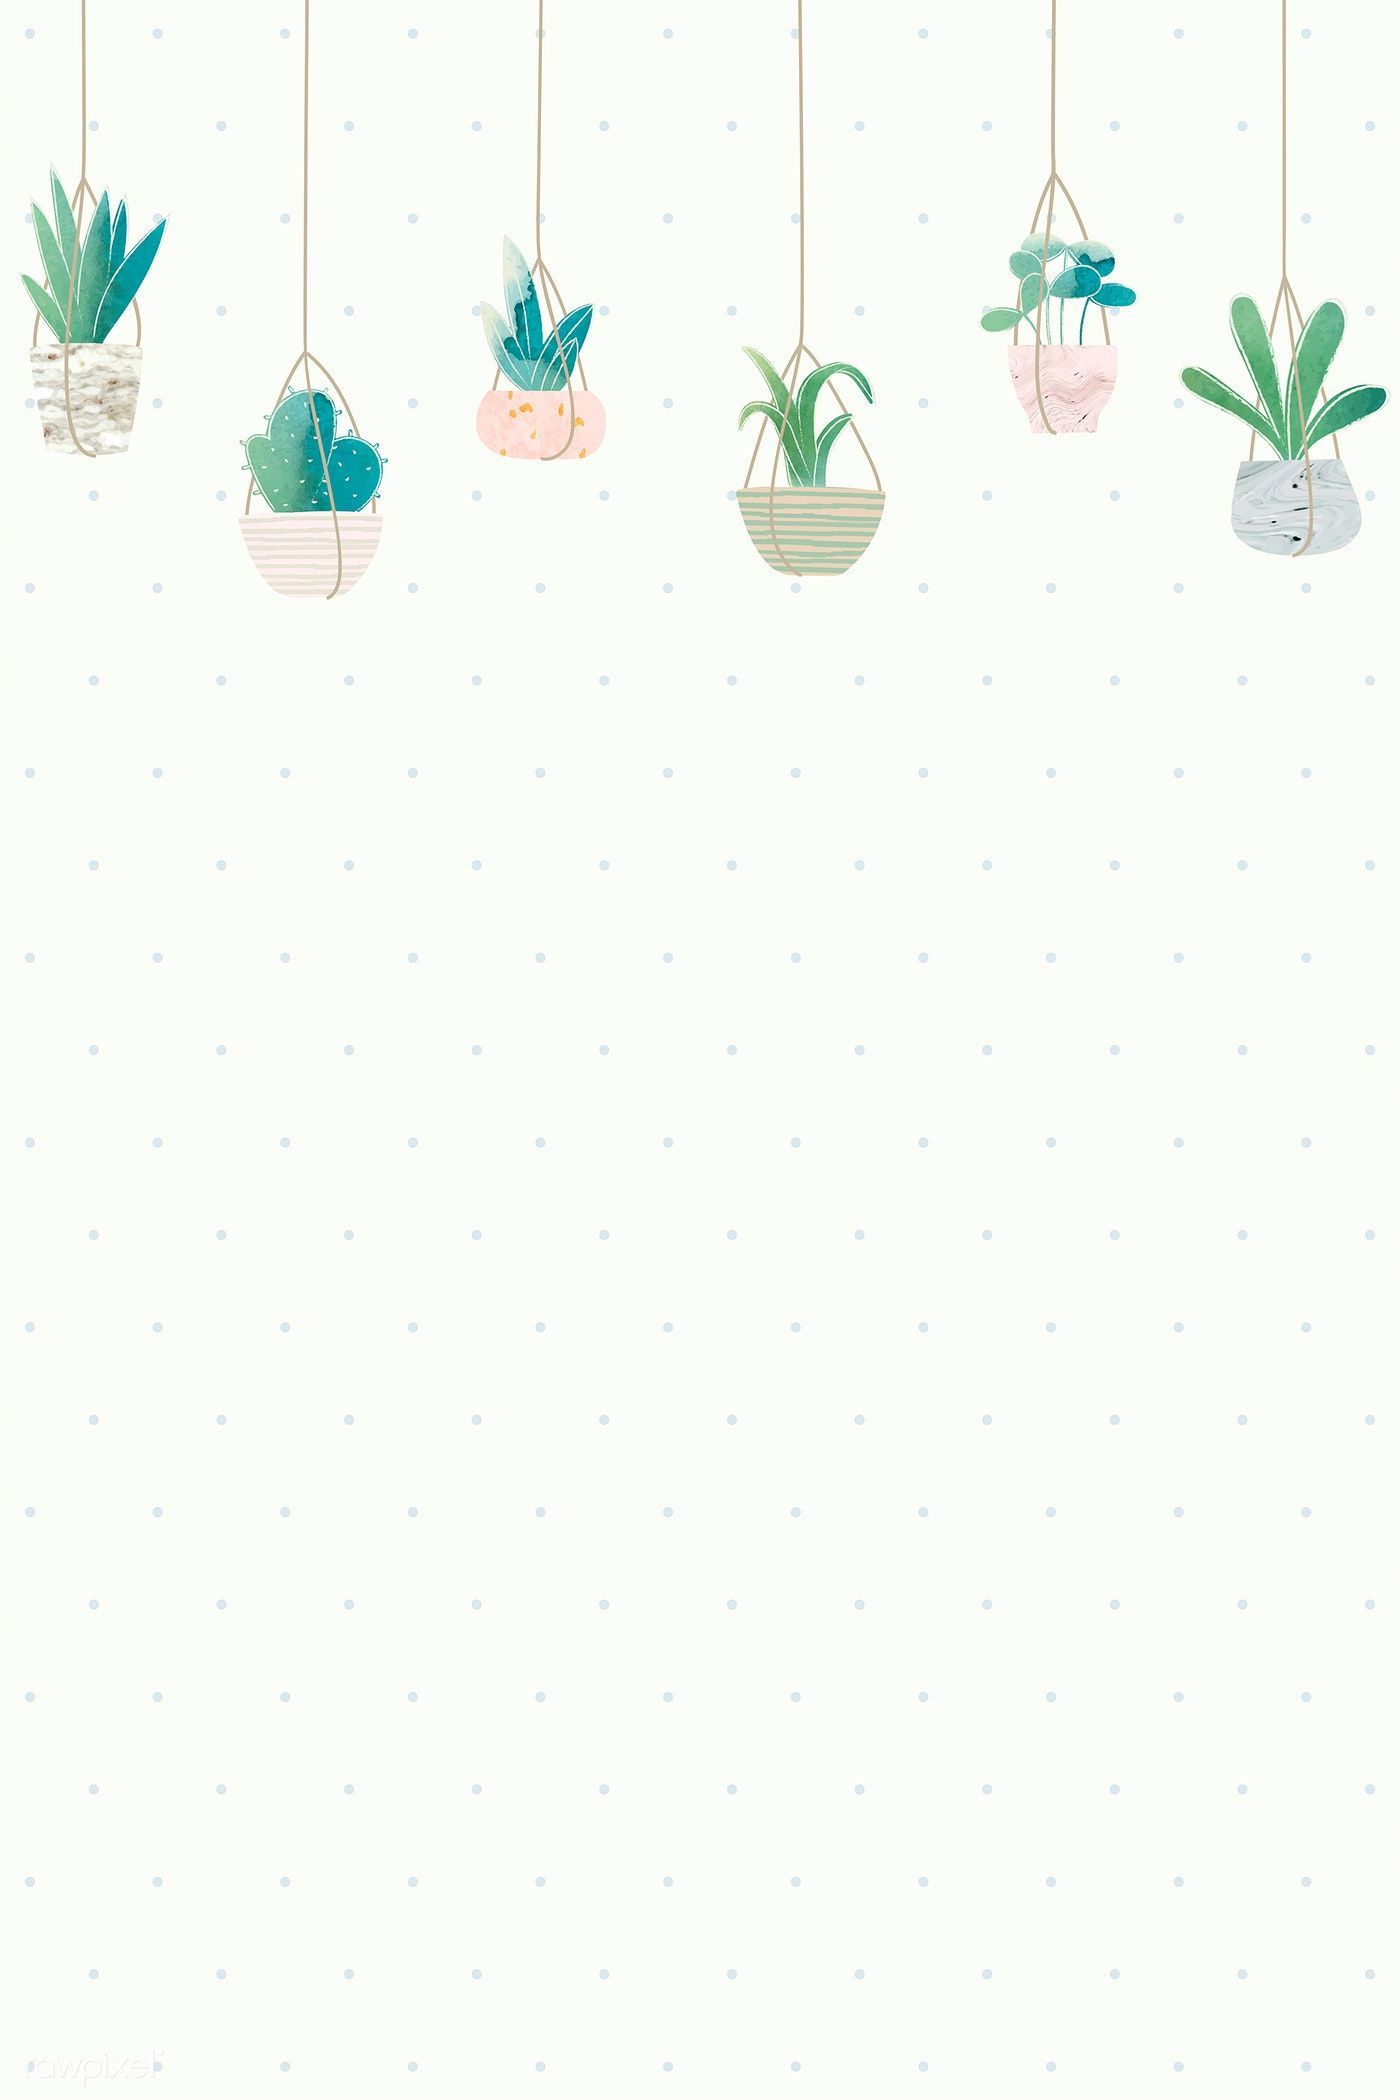 Blank cactus frame design vector. premium image. Cactus illustration, Aesthetic iphone wallpaper, Cactus background